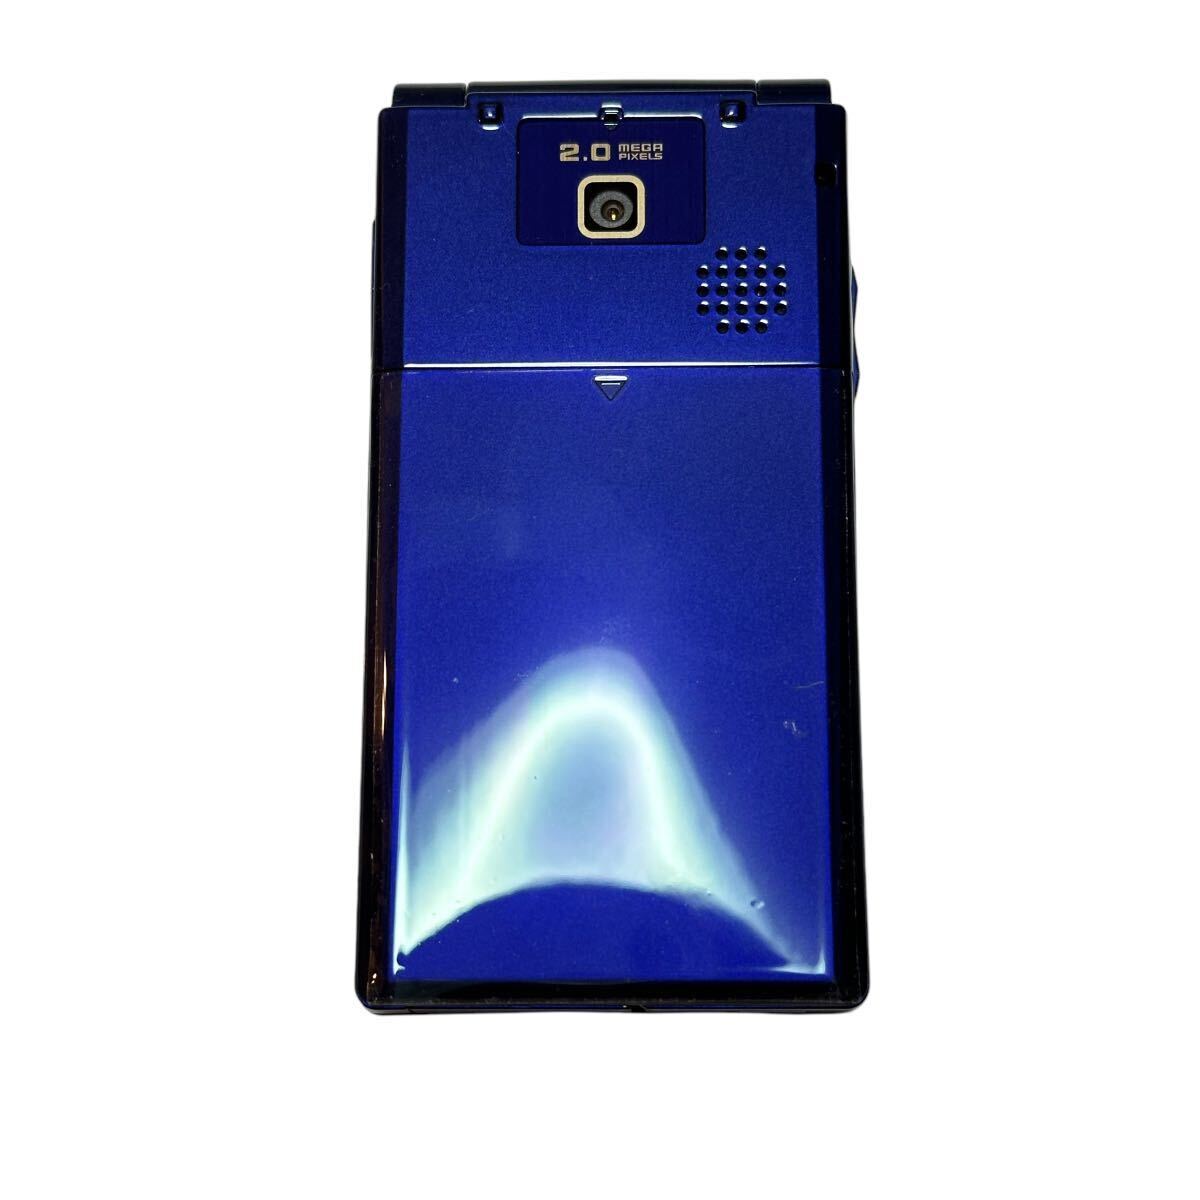 未使用 SoftBank 740SC ブルー ガラケー 携帯電話 折りたたみ携帯 3G プリペイドの画像3